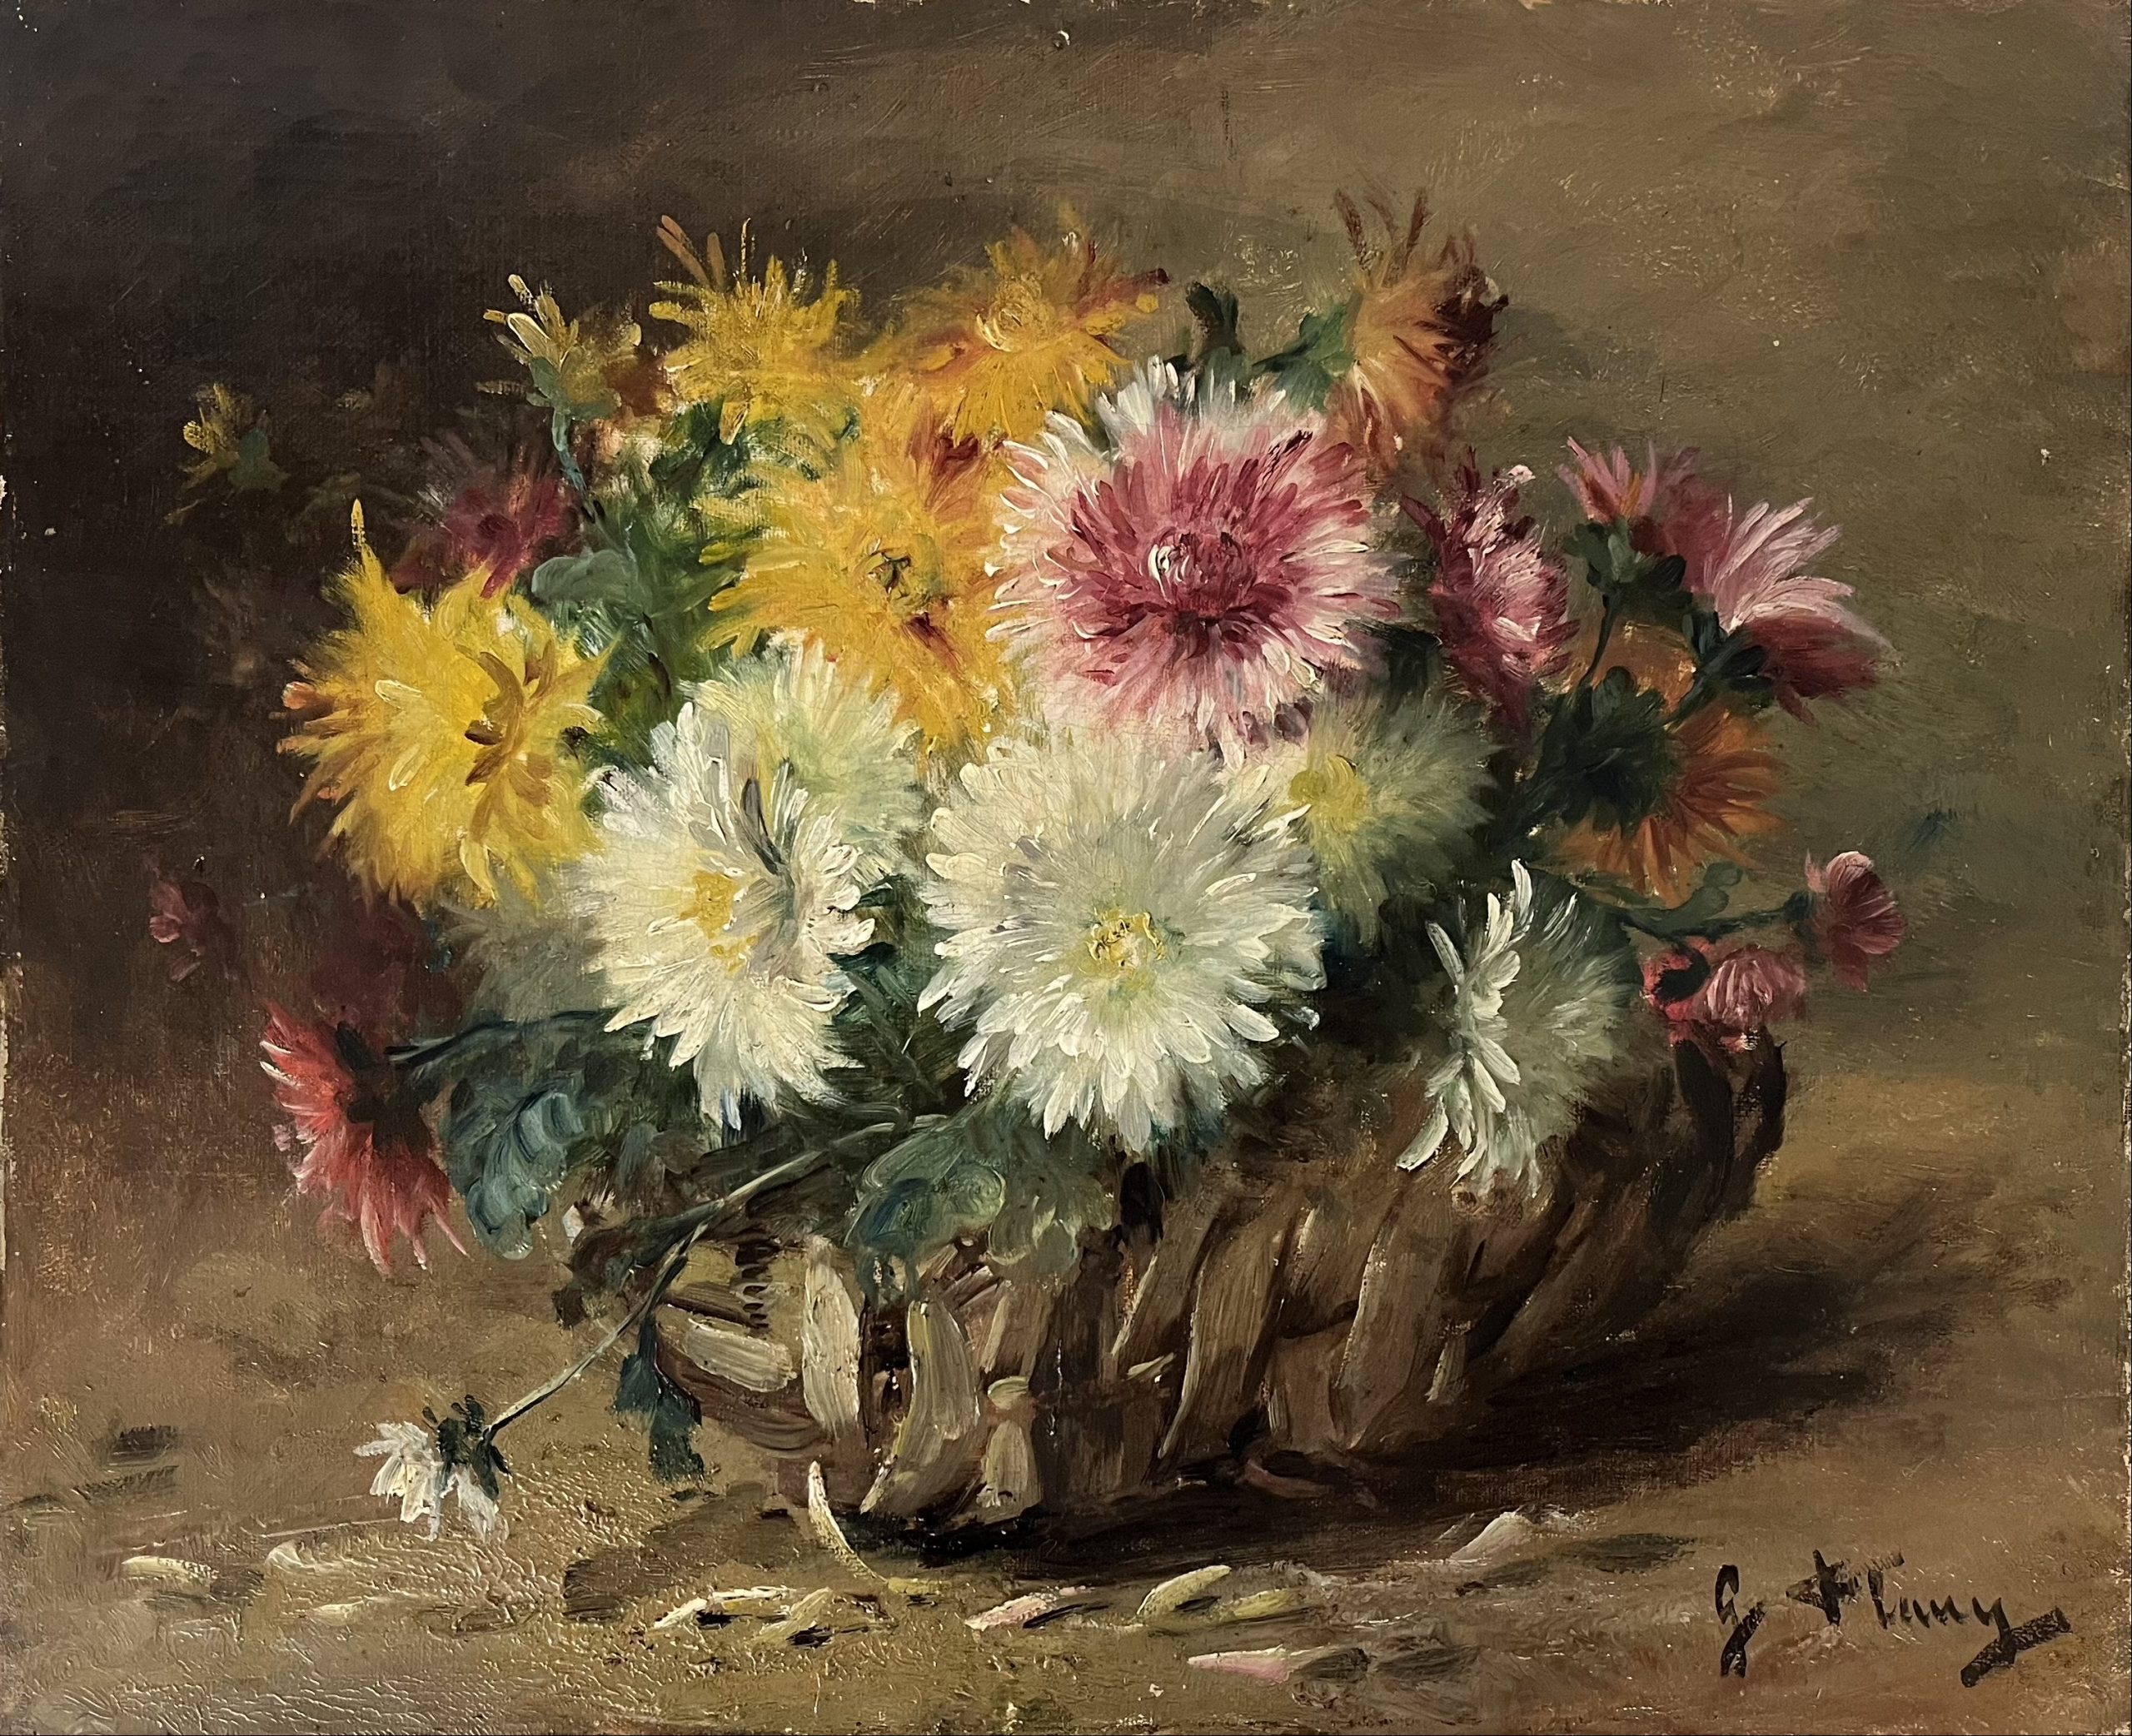 G. FLUNY, Bouquet de dahlias, XIXe, huile sur toile, 46 x 37,5 cm